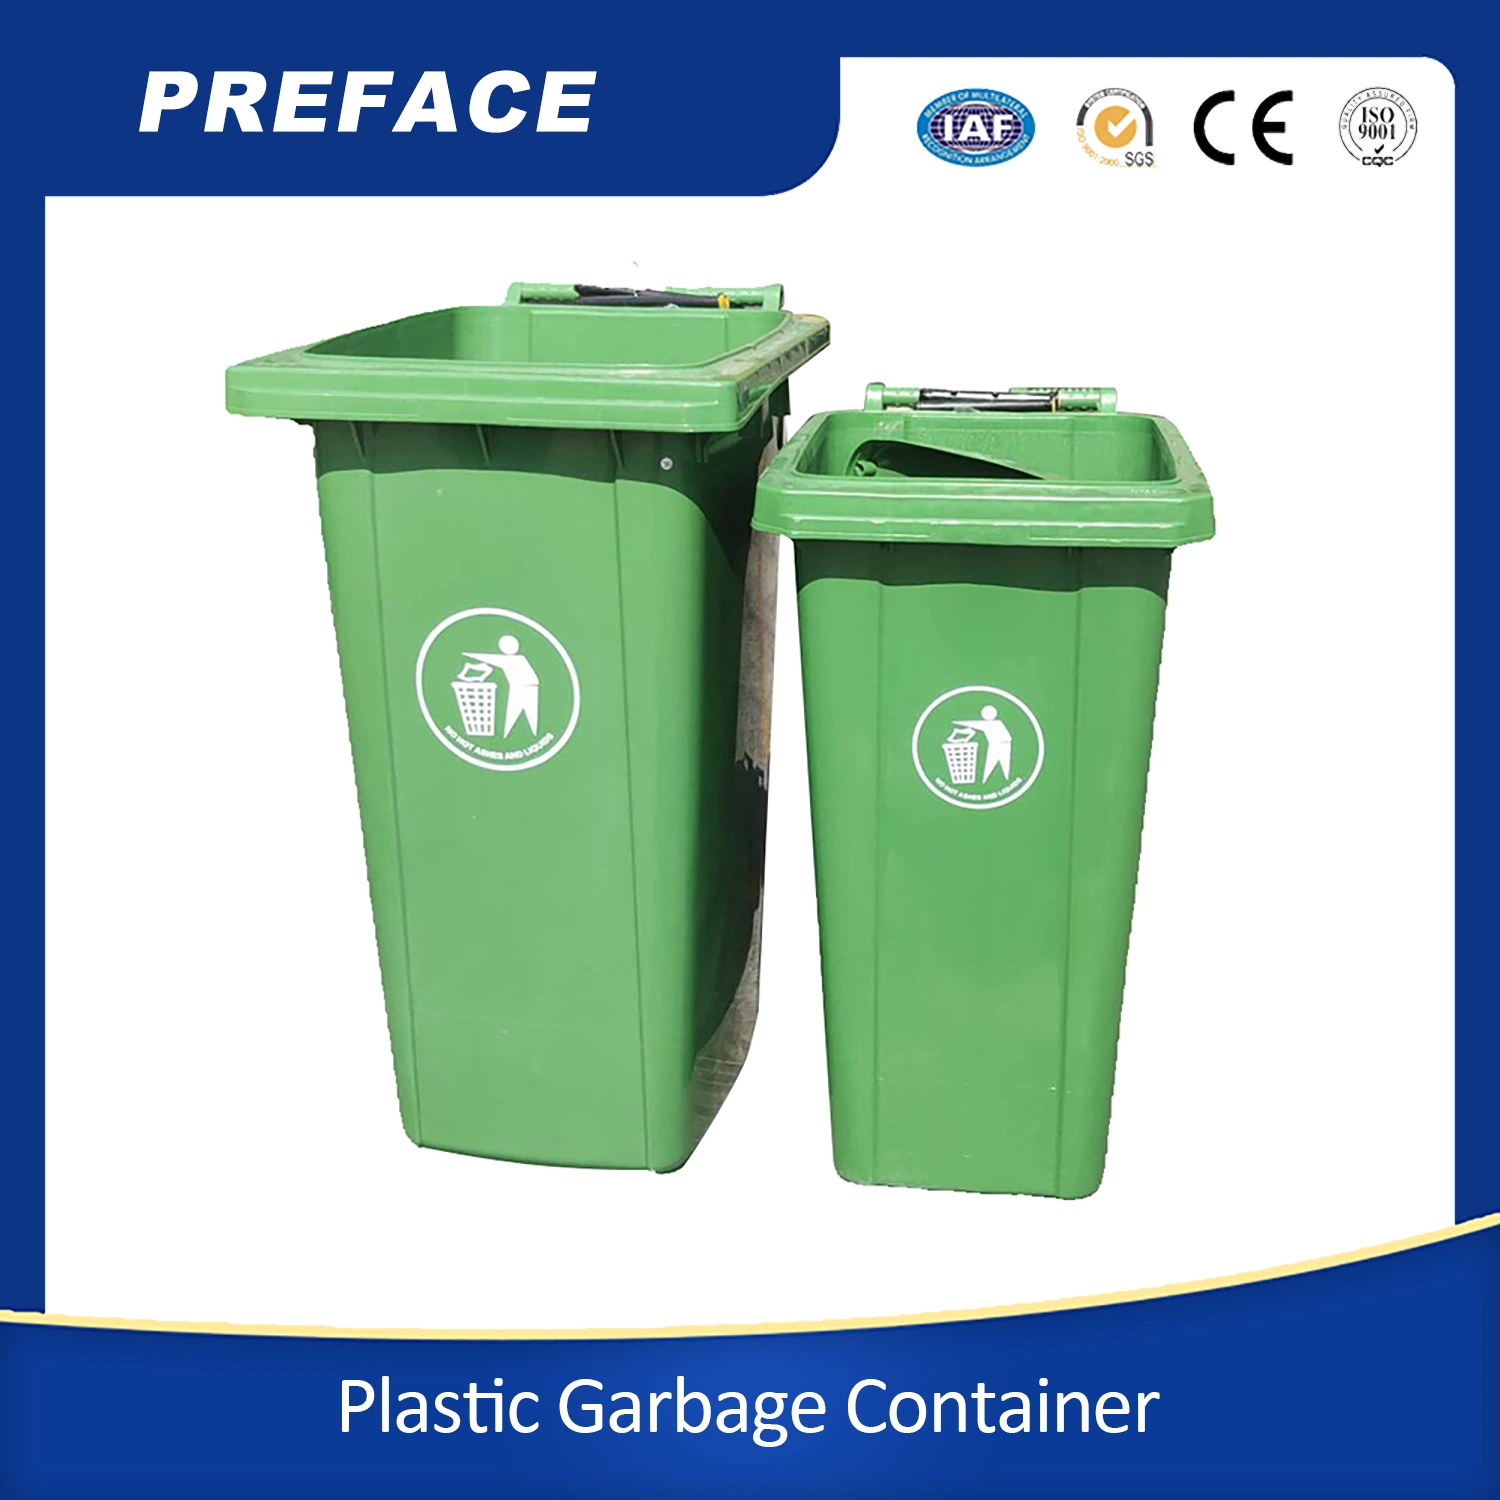 Caixote do lixo de 120 litros, castanho, e grande caixa estanque E o caixote do lixo com rodas de plástico Reciclagem pode ser usado com a tampa Para Venda de Reciclagem ao ar livre, pode personalizar o tamanho